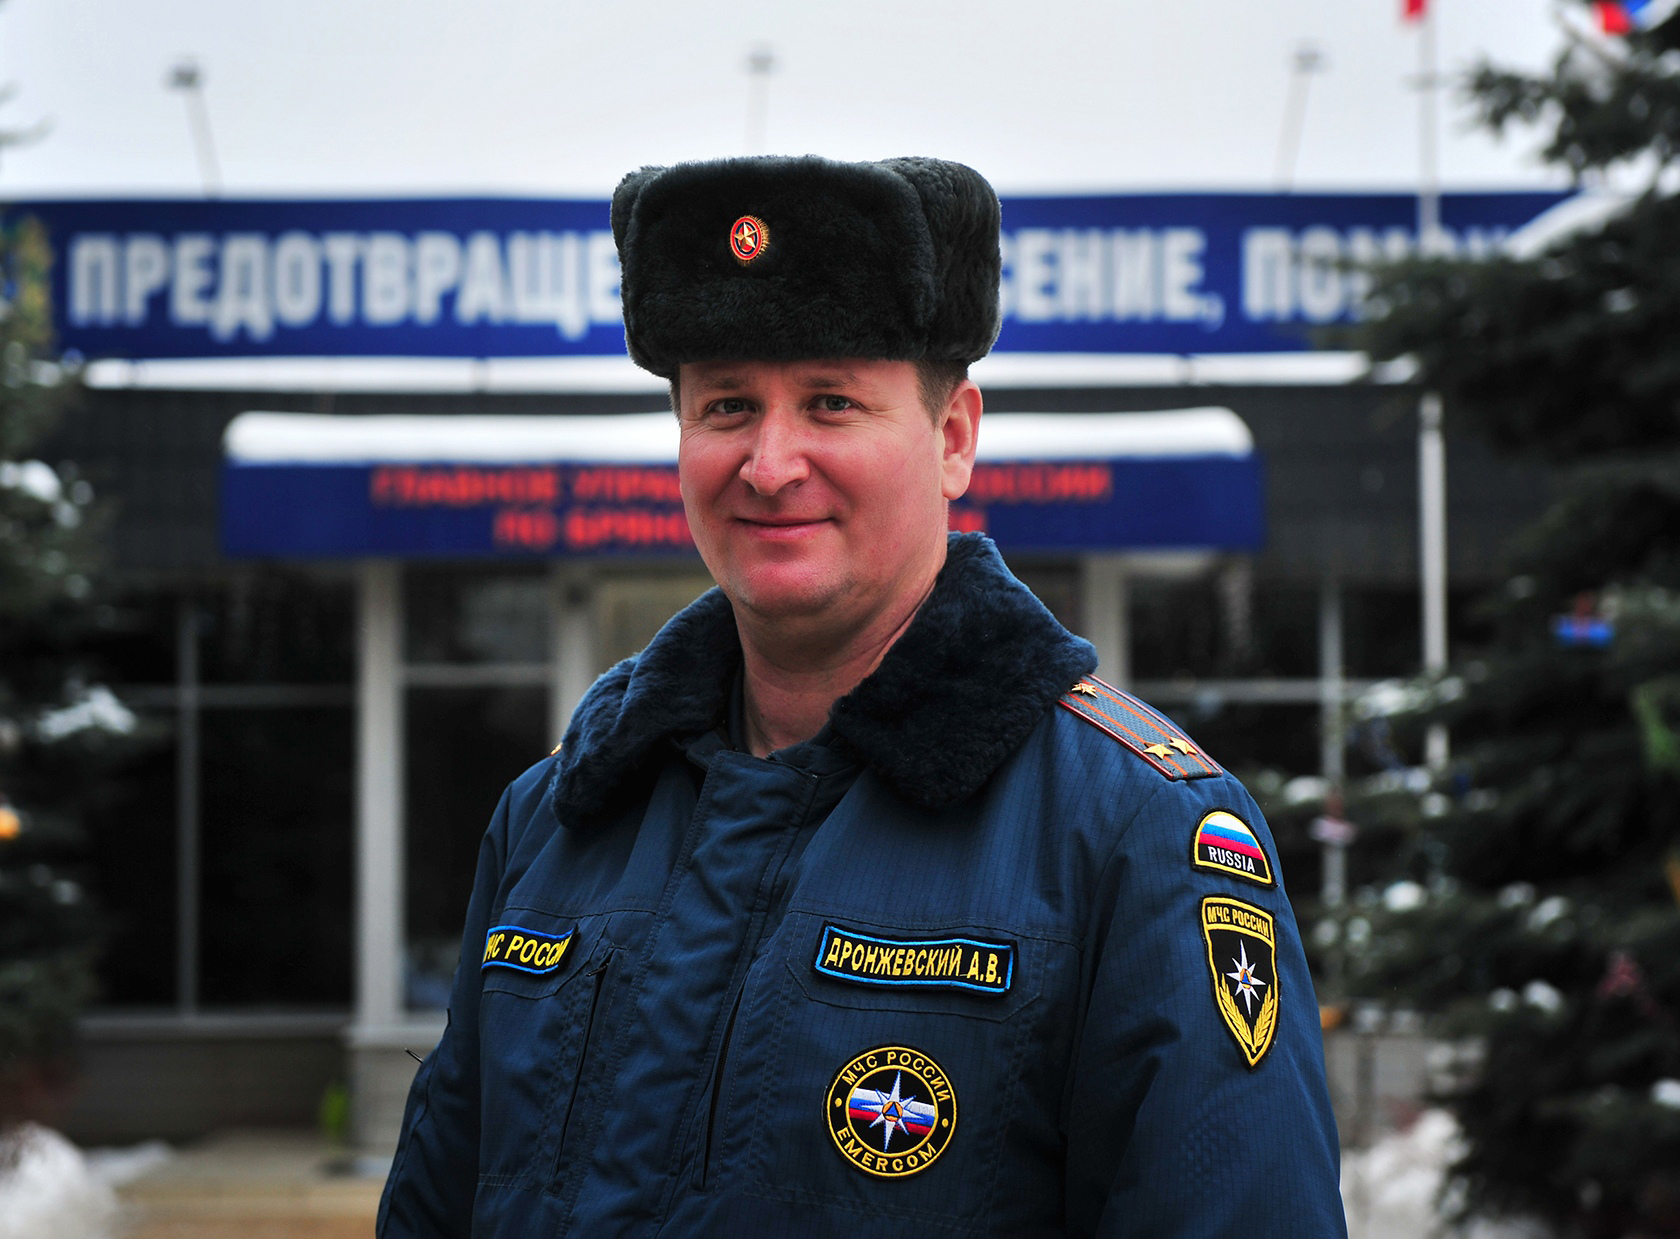 Алексей Дронжевский 25 лет руководит тушением крупных пожаров и спасательными операциями в Брянской области